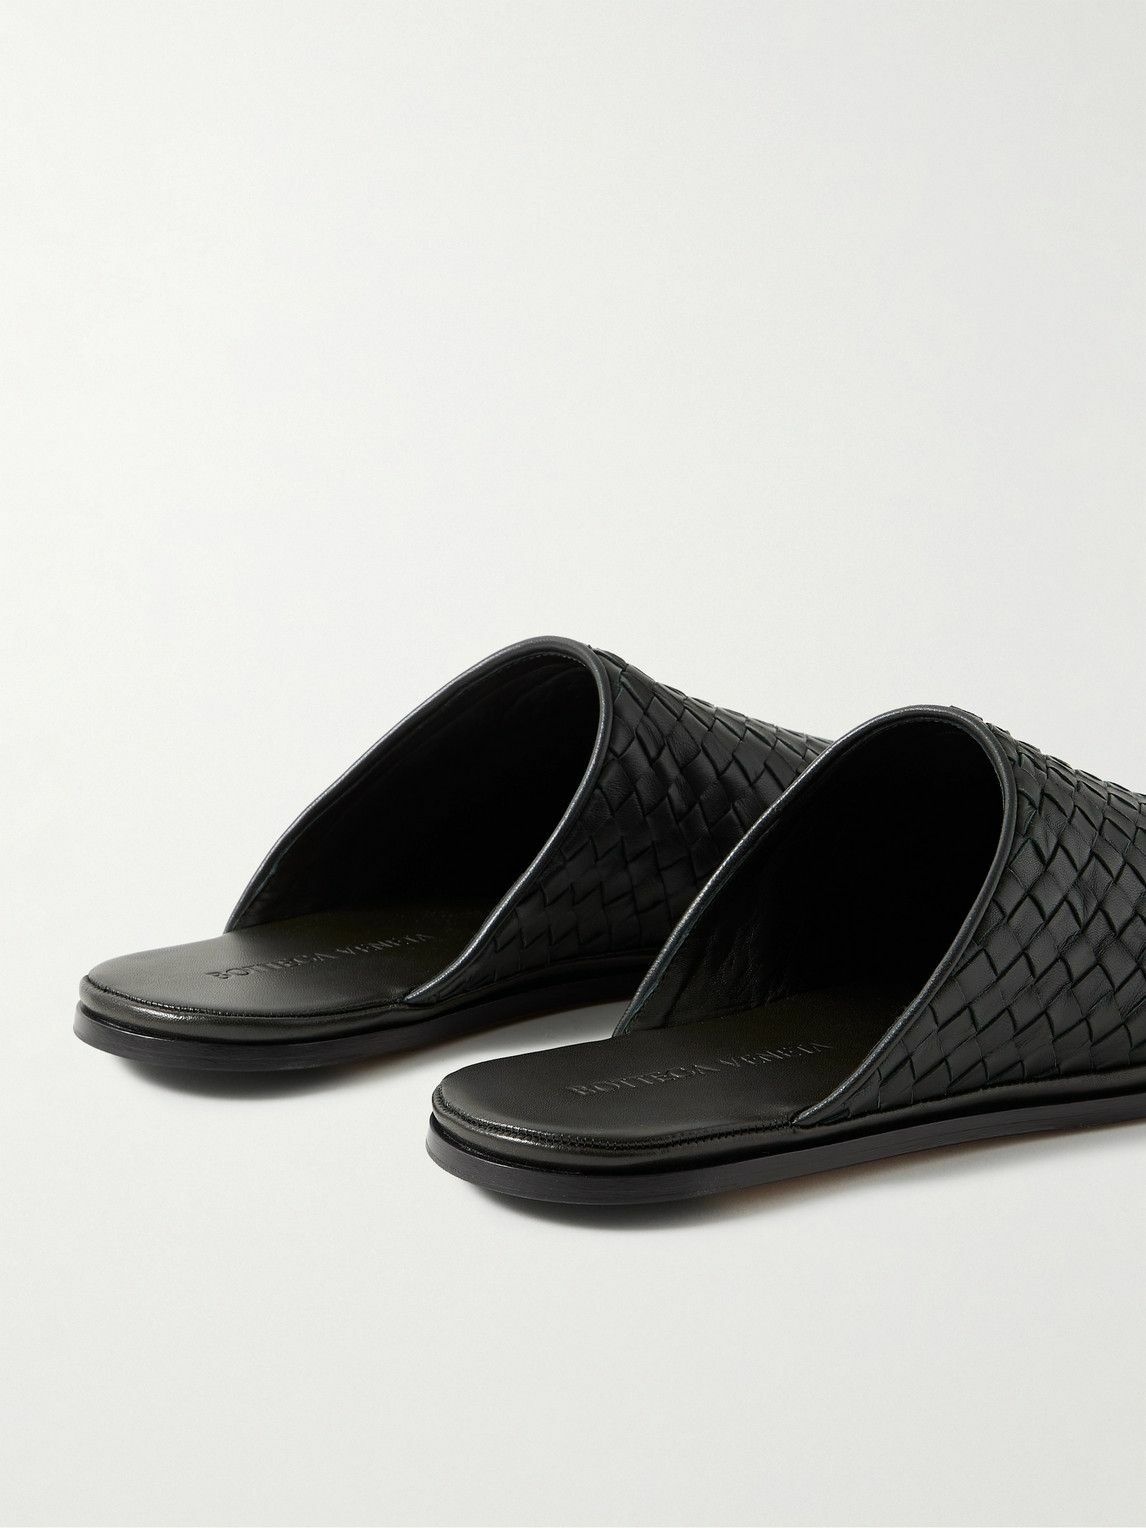 Bottega Veneta - Intrecciato Leather Slippers - Black